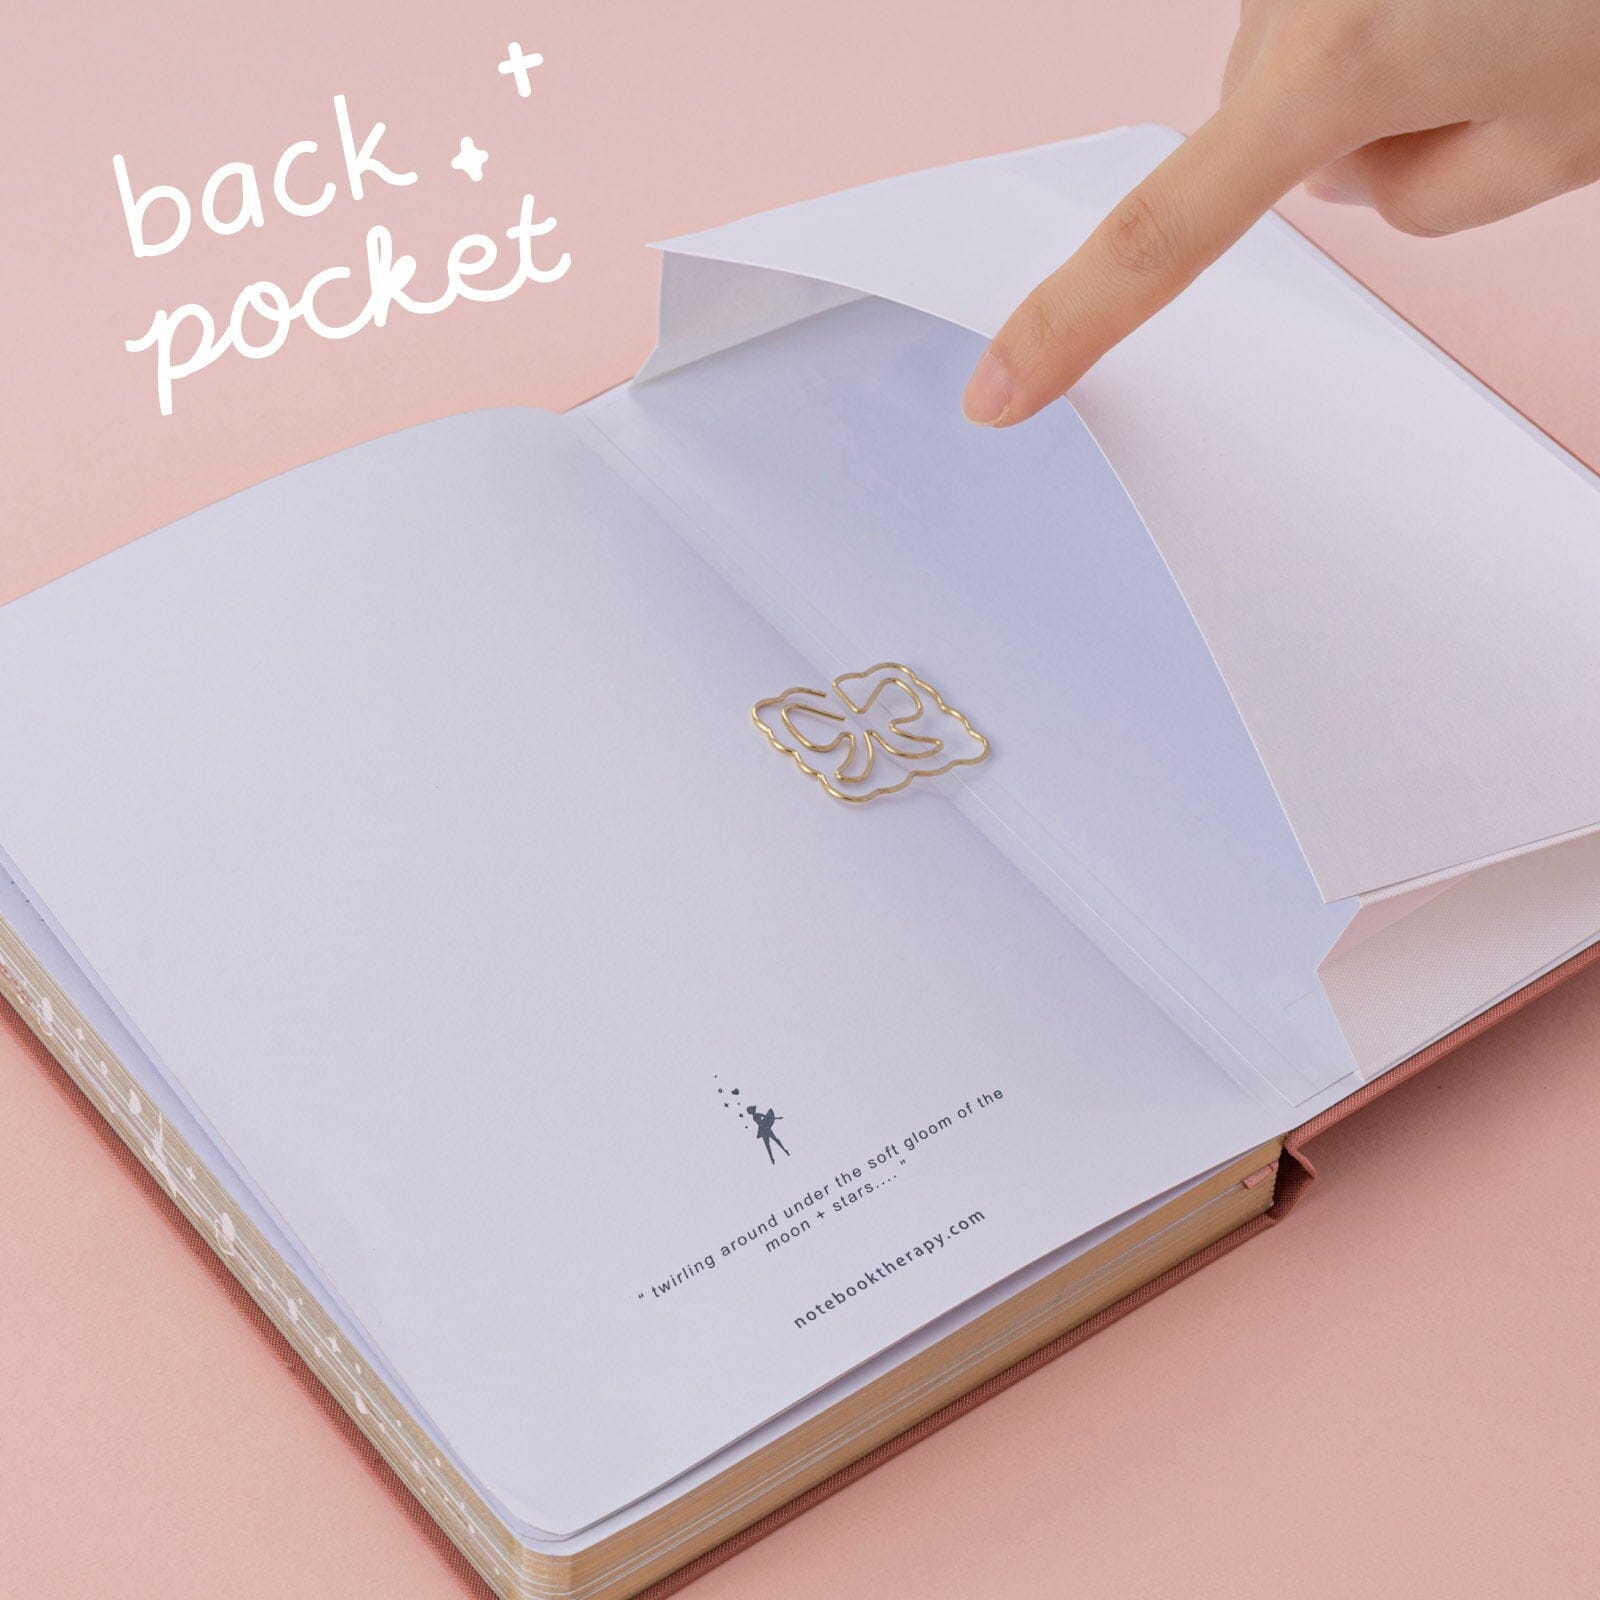 Tsuki 'Sweet Ballet' Washi Tape Set ☾ – NotebookTherapy